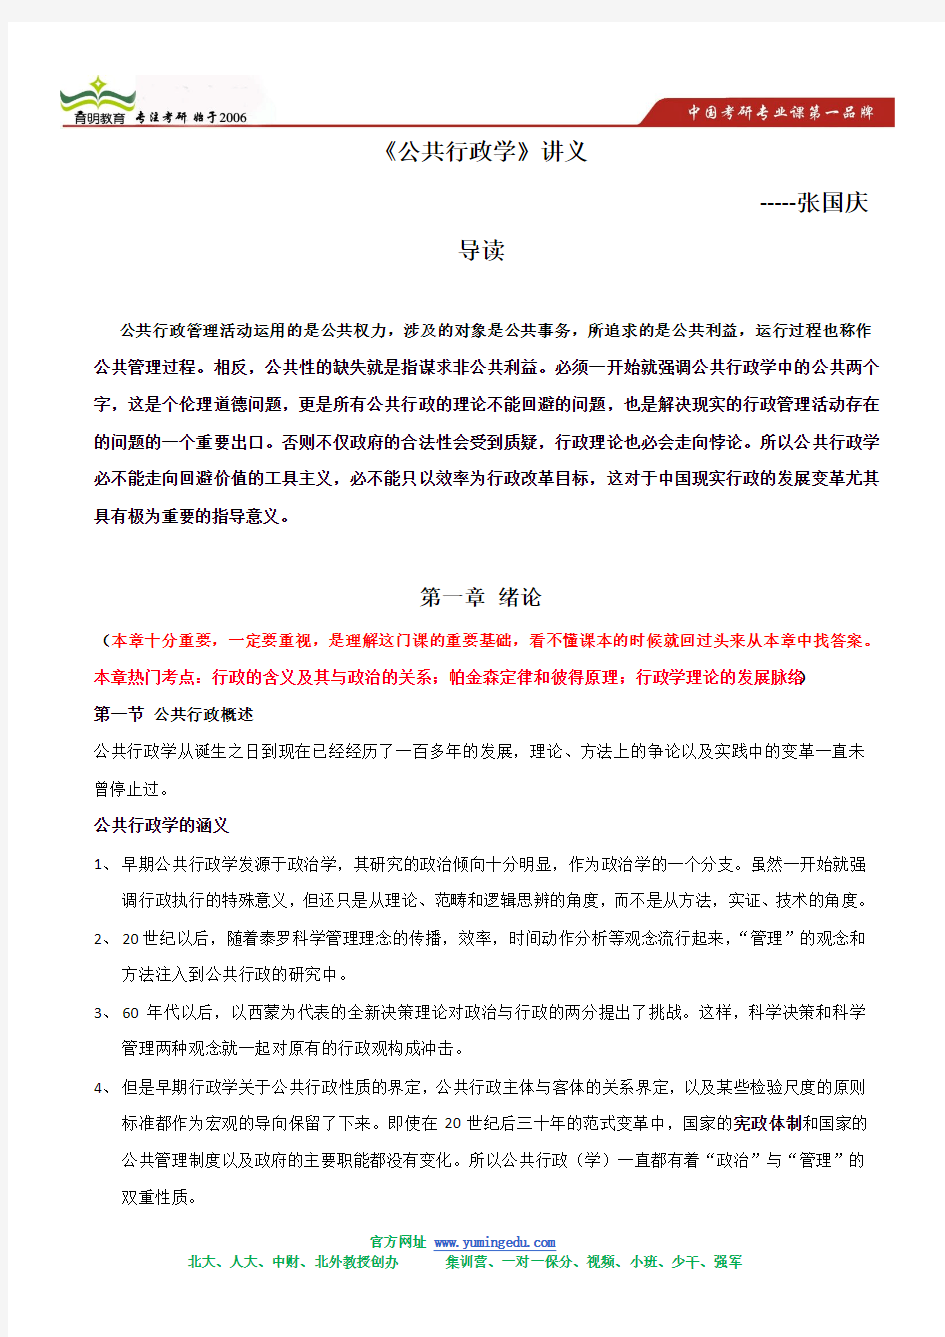 2014-张国庆 公共行政学考研讲义